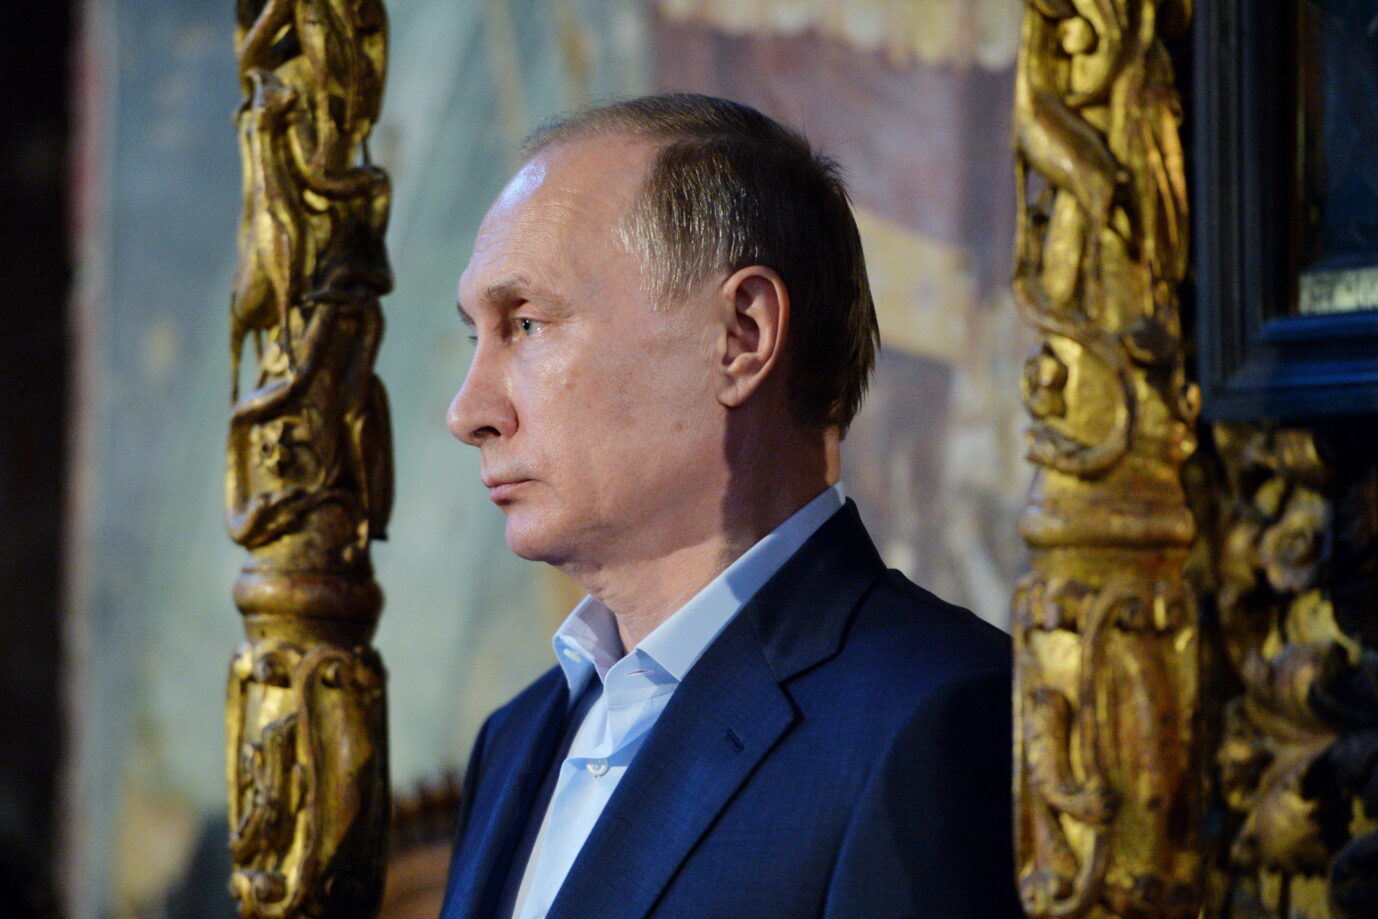 Rußlands Präsident Wladimir Putin: Neben weiterer militärischer Eskalation setzt er darauf, die westliche Solidarität mit der Ukraine auf wirtschaftlicher Ebene zu zermürben